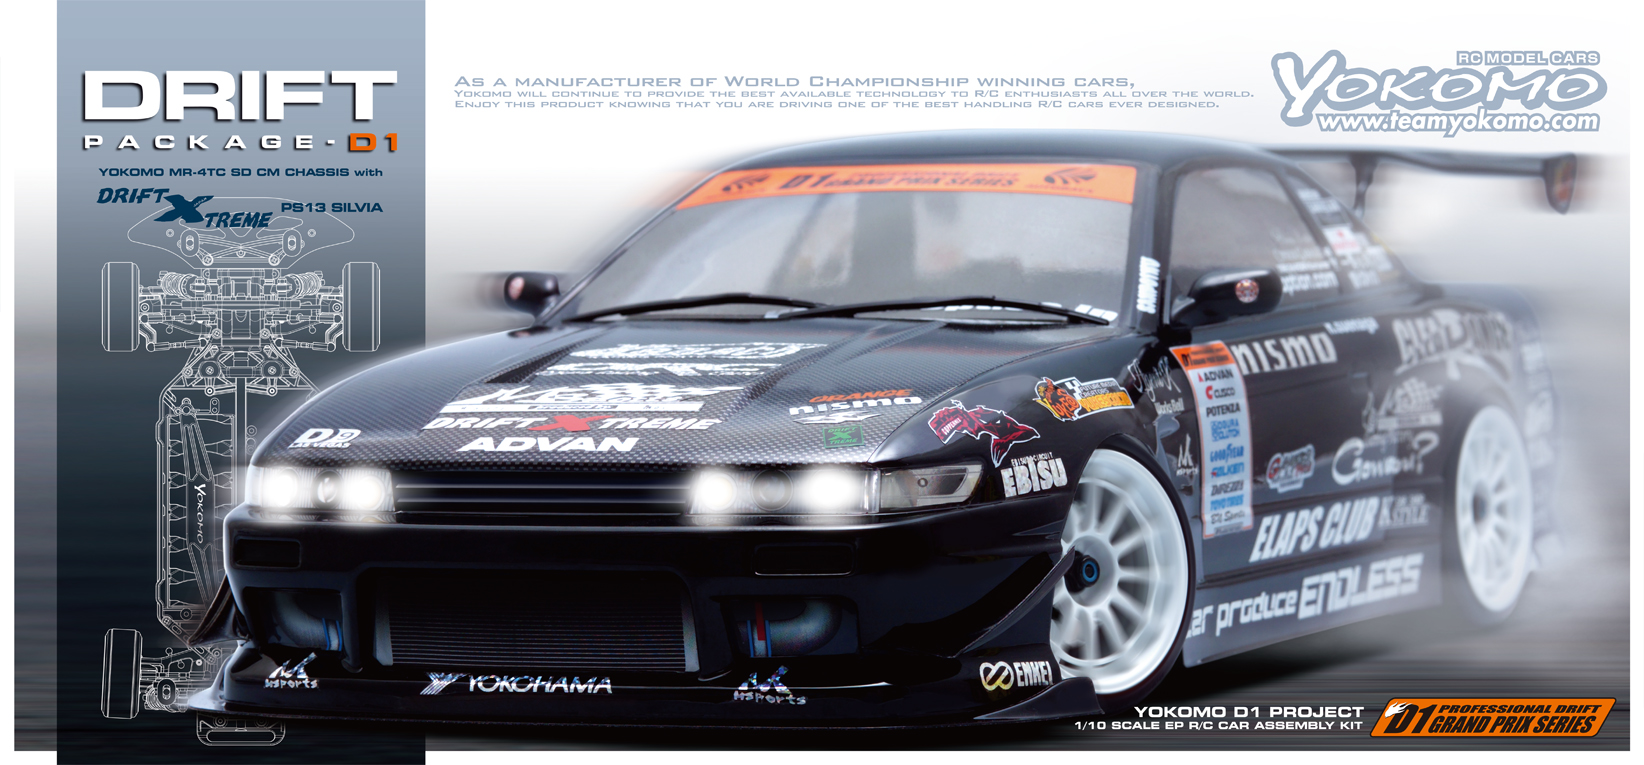 ドリフトパッケージ D1シリーズ エクストリーム PS13 シルビアキット - ラジコンカー・RCカーのヨコモ／YOKOMO 公式サイト